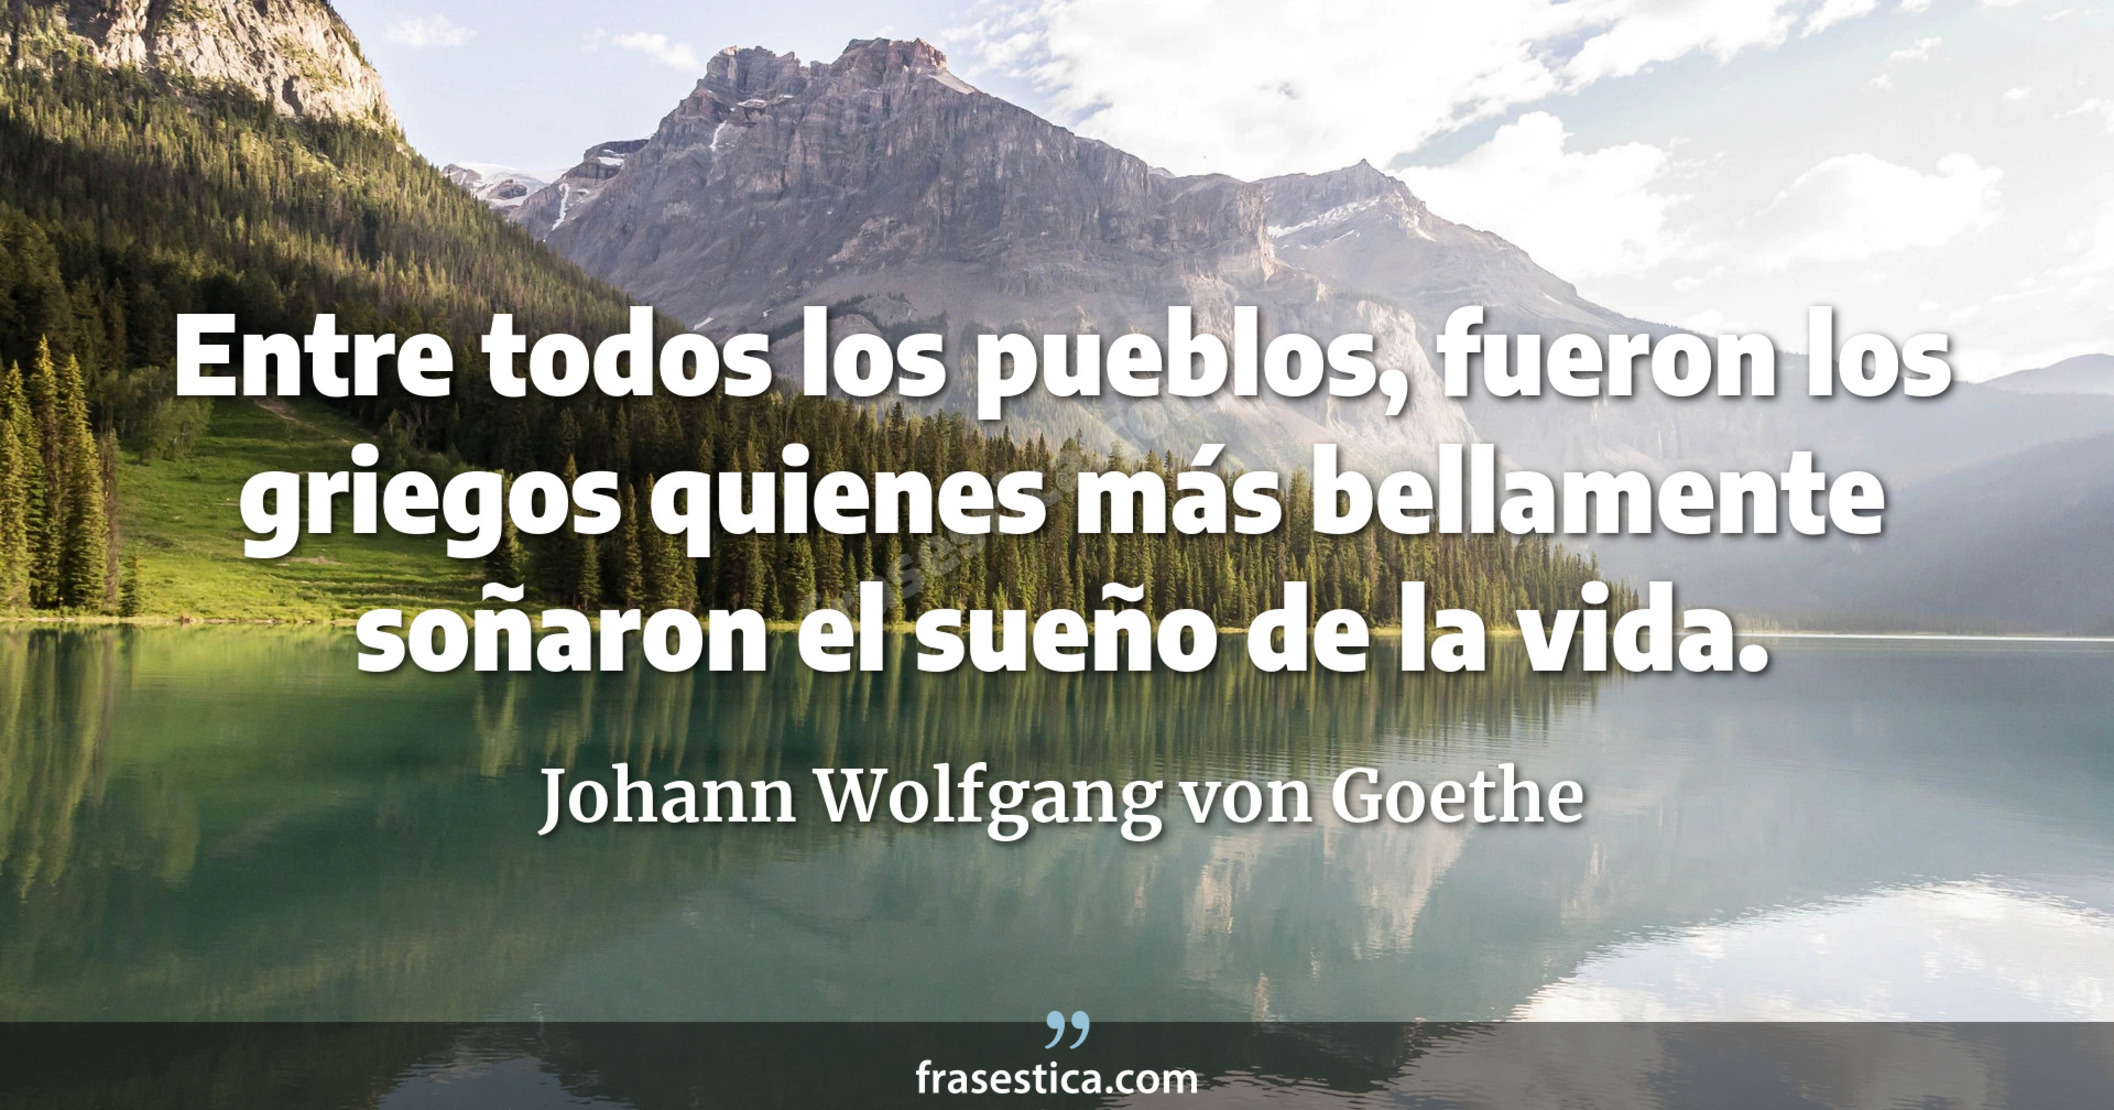 Entre todos los pueblos, fueron los griegos quienes más bellamente soñaron el sueño de la vida. - Johann Wolfgang von Goethe